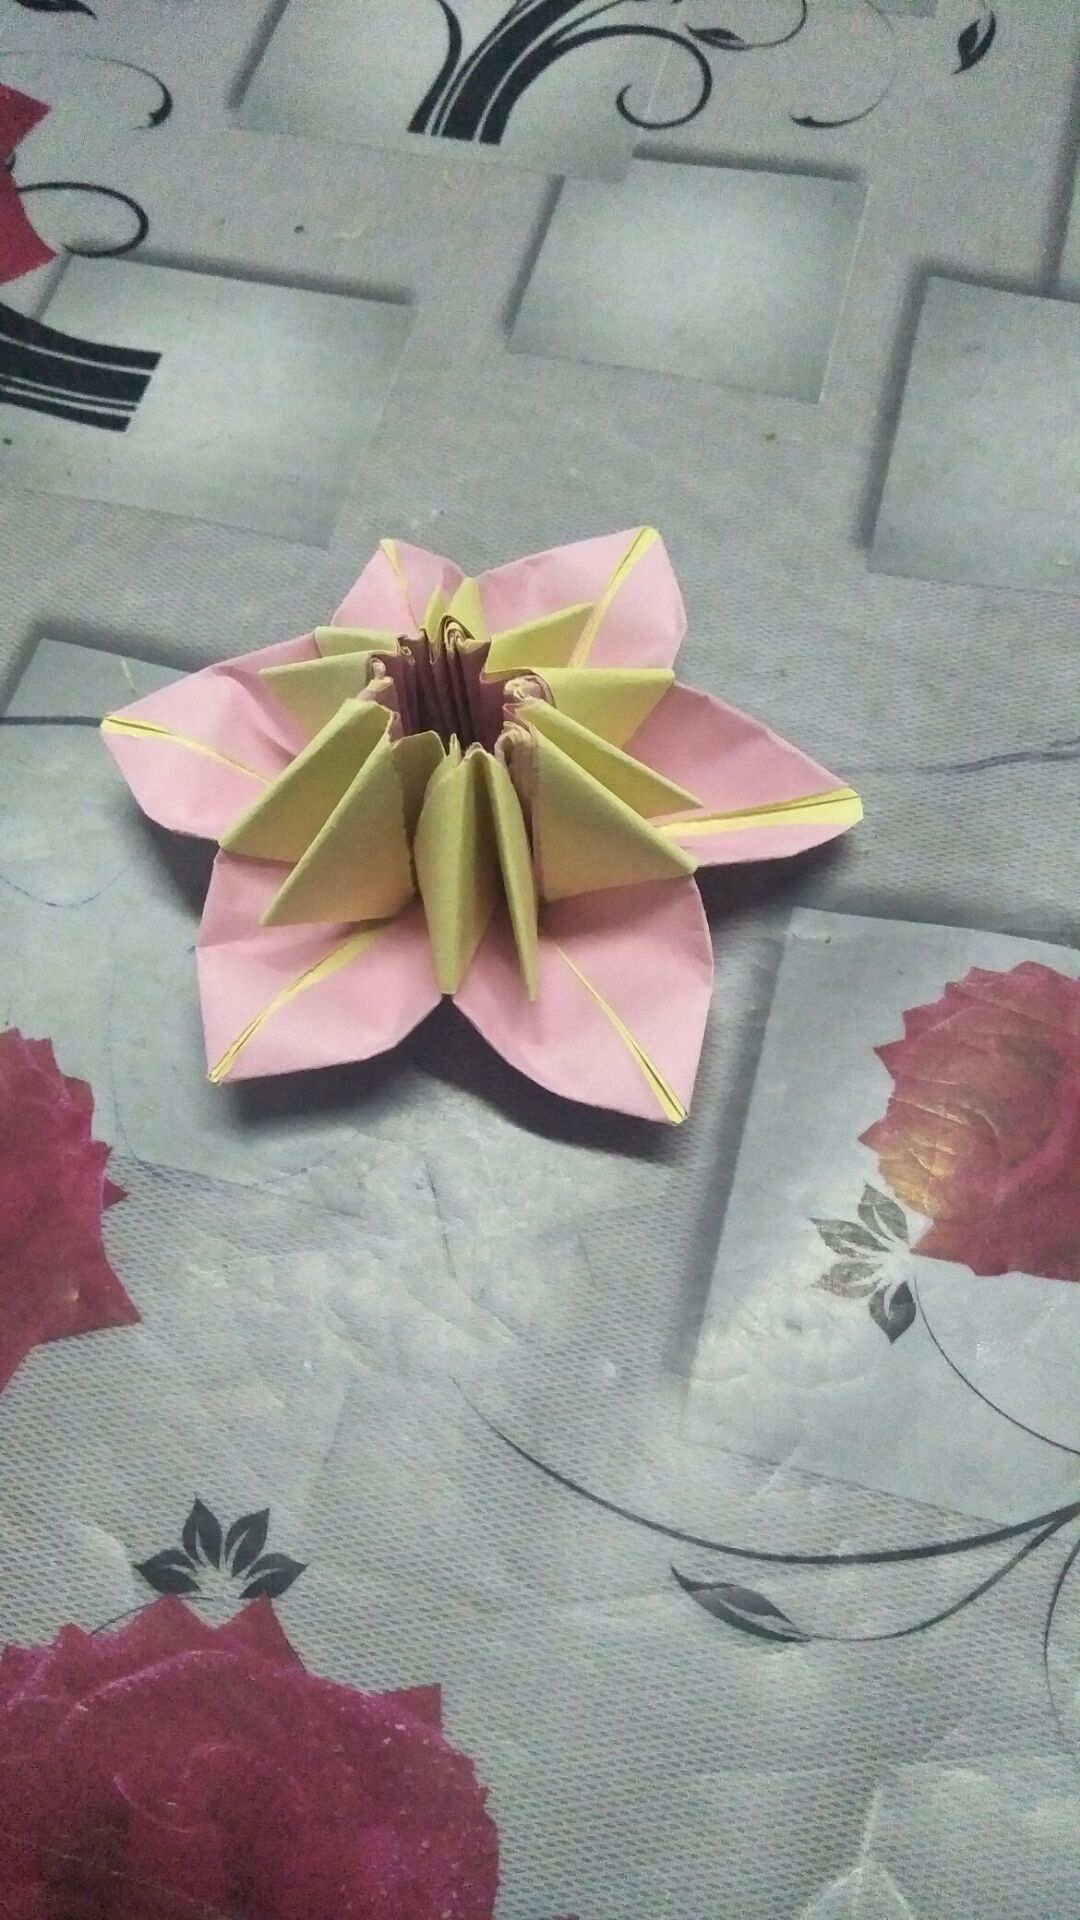 启蒙画室老师赵旭慧13137786759，用两色纸做了一个图文教程，装饰花儿，分享一下